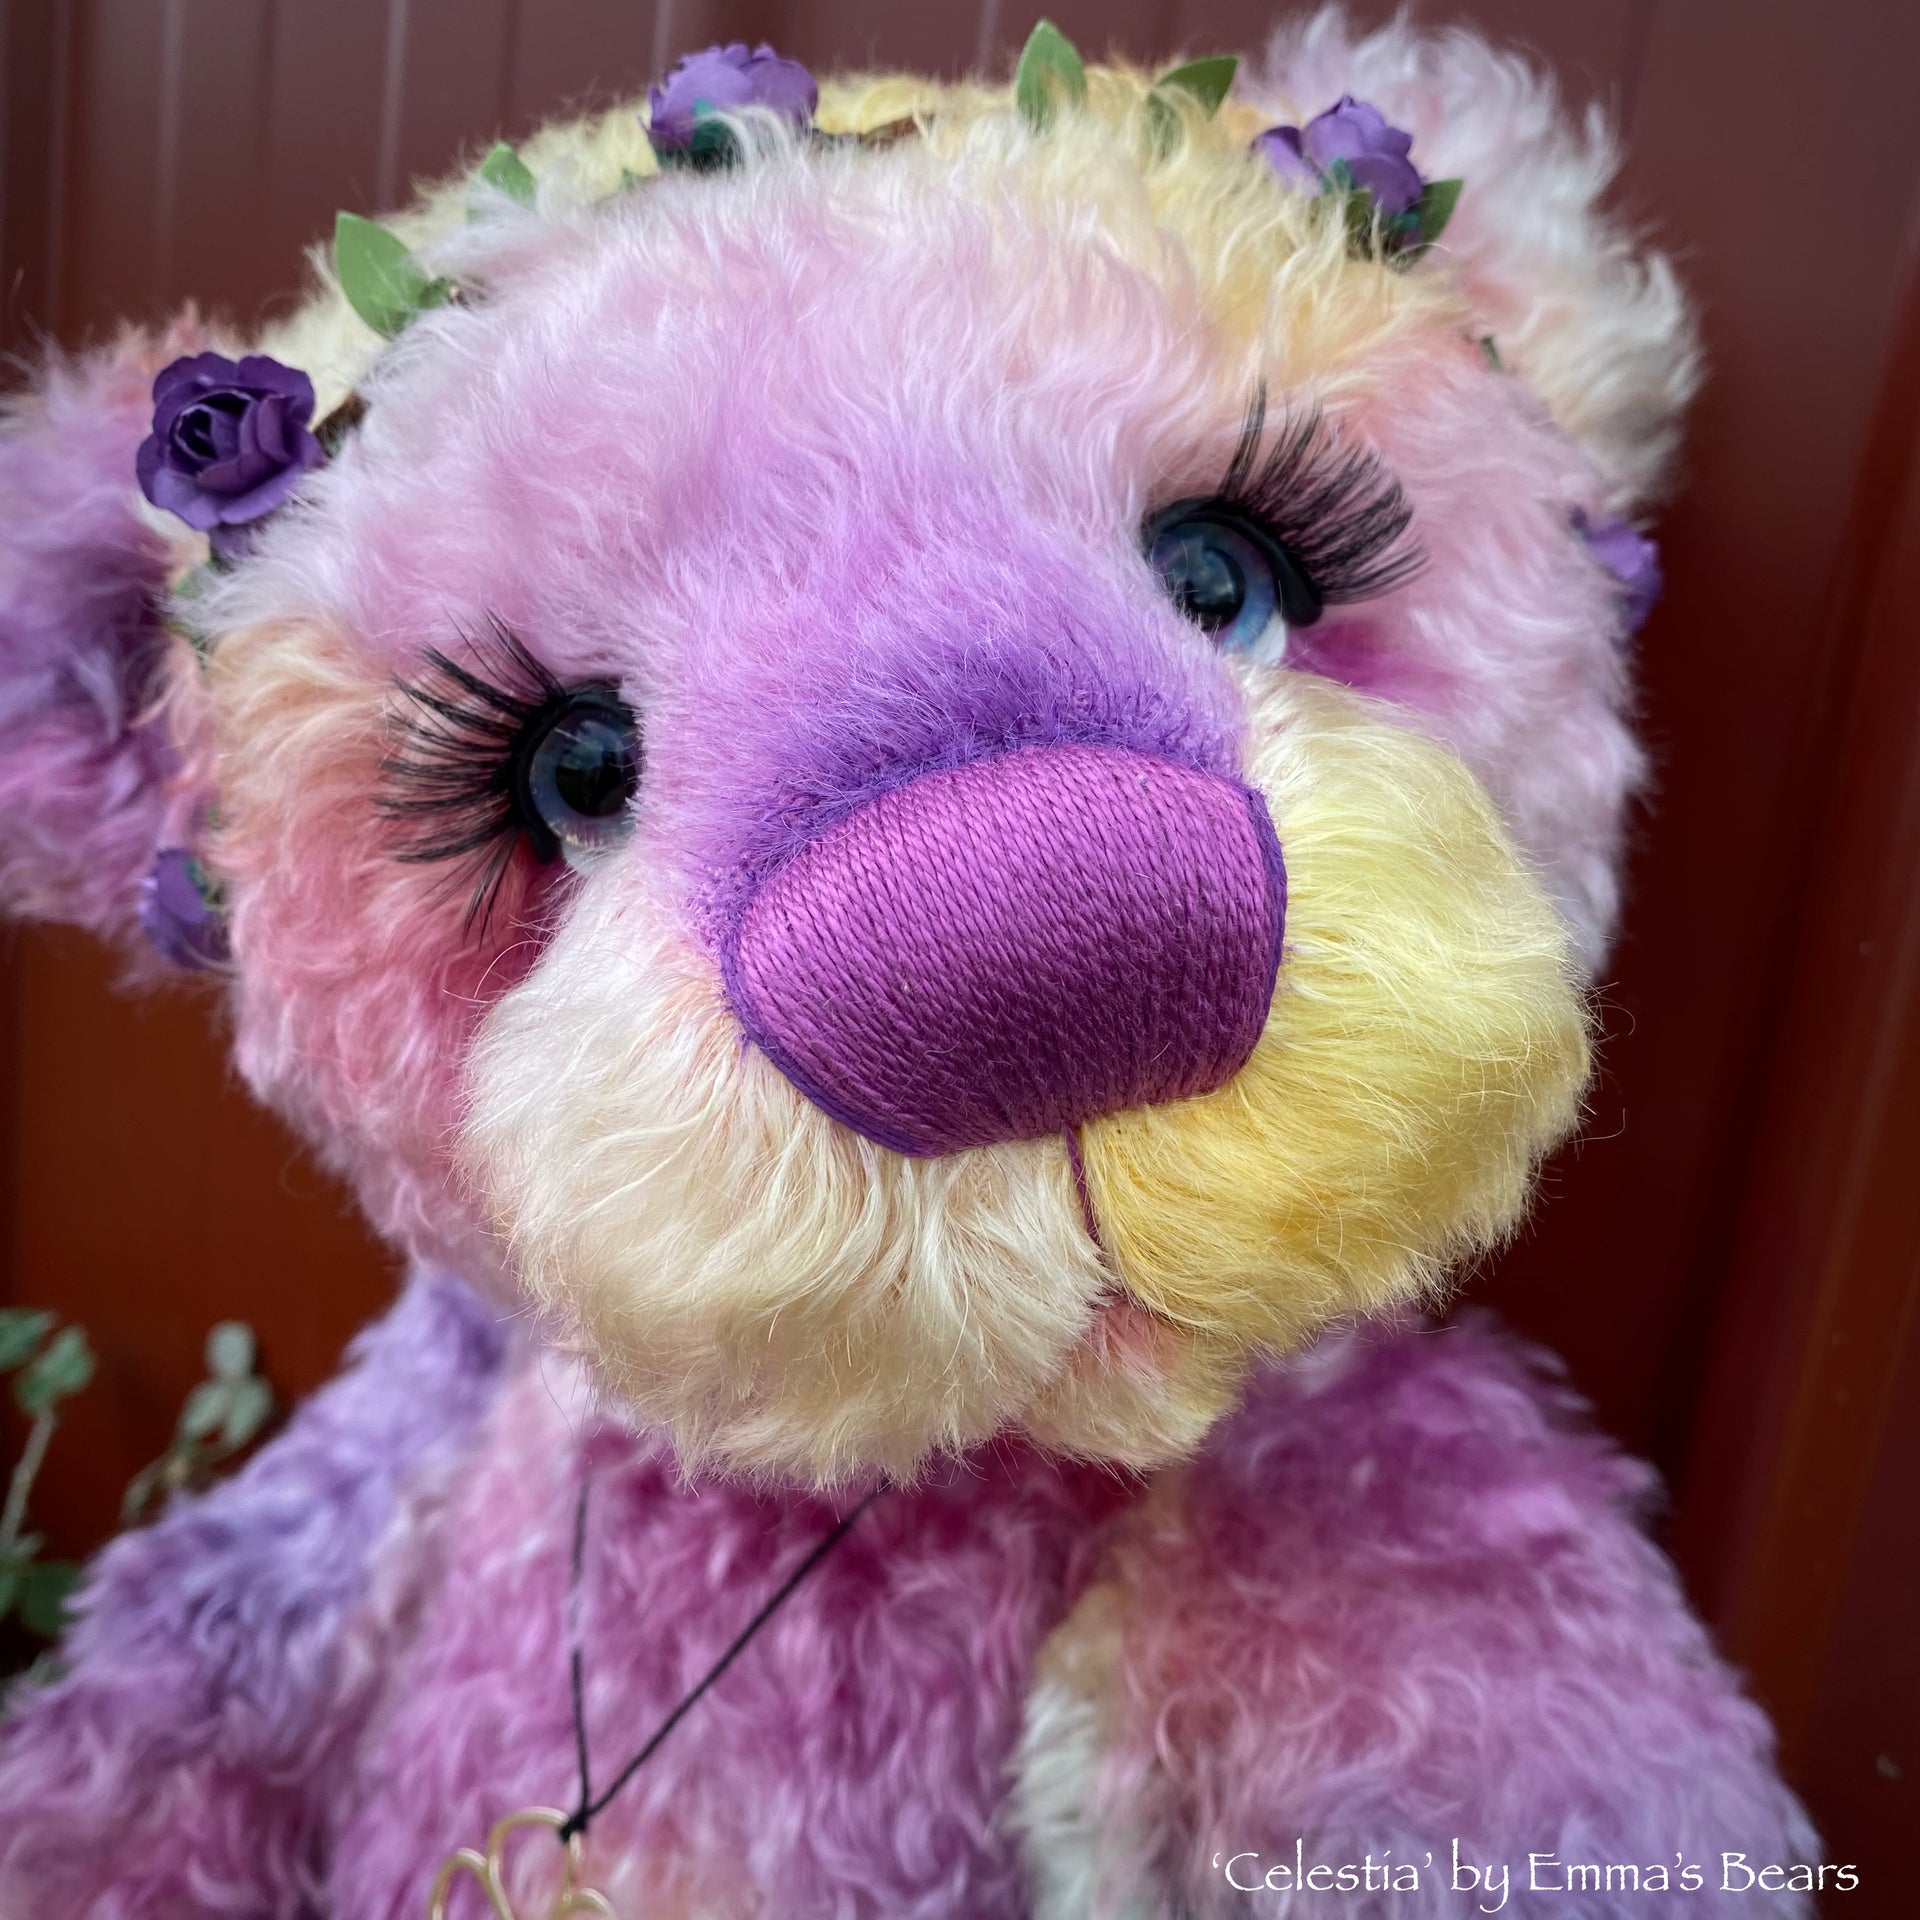 Celestia - 18" hand dyed curly kid mohair bear by Emmas Bears - OOAK